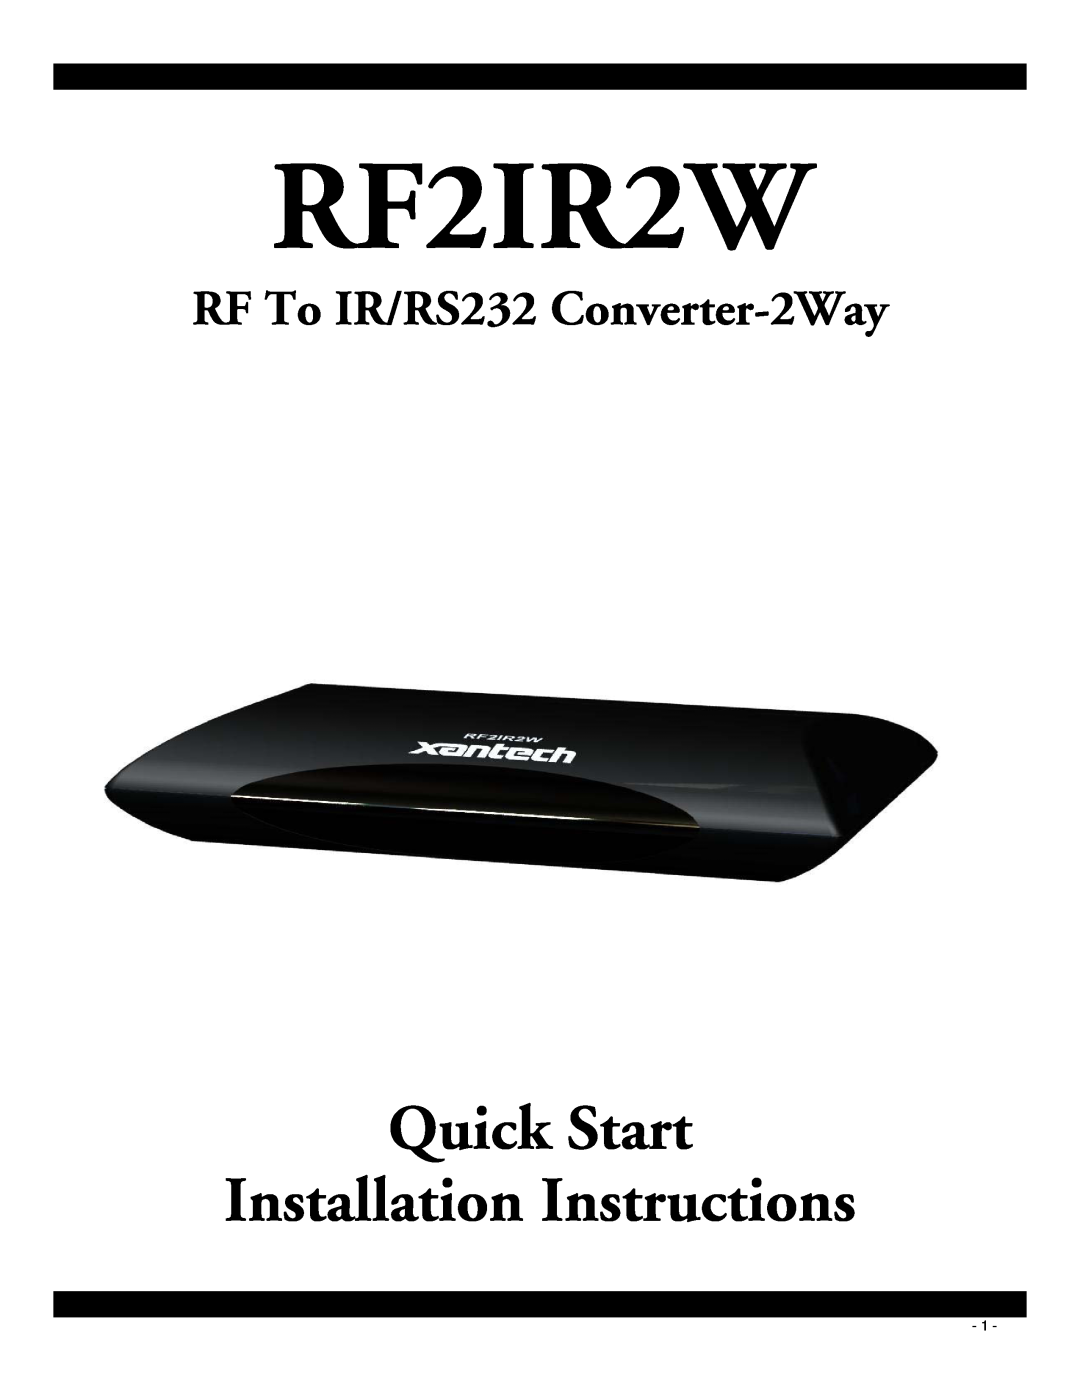 Xantech RF2IR2W quick start Quick Start Installation Instructions, RF To IR/RS232 Converter-2Way 